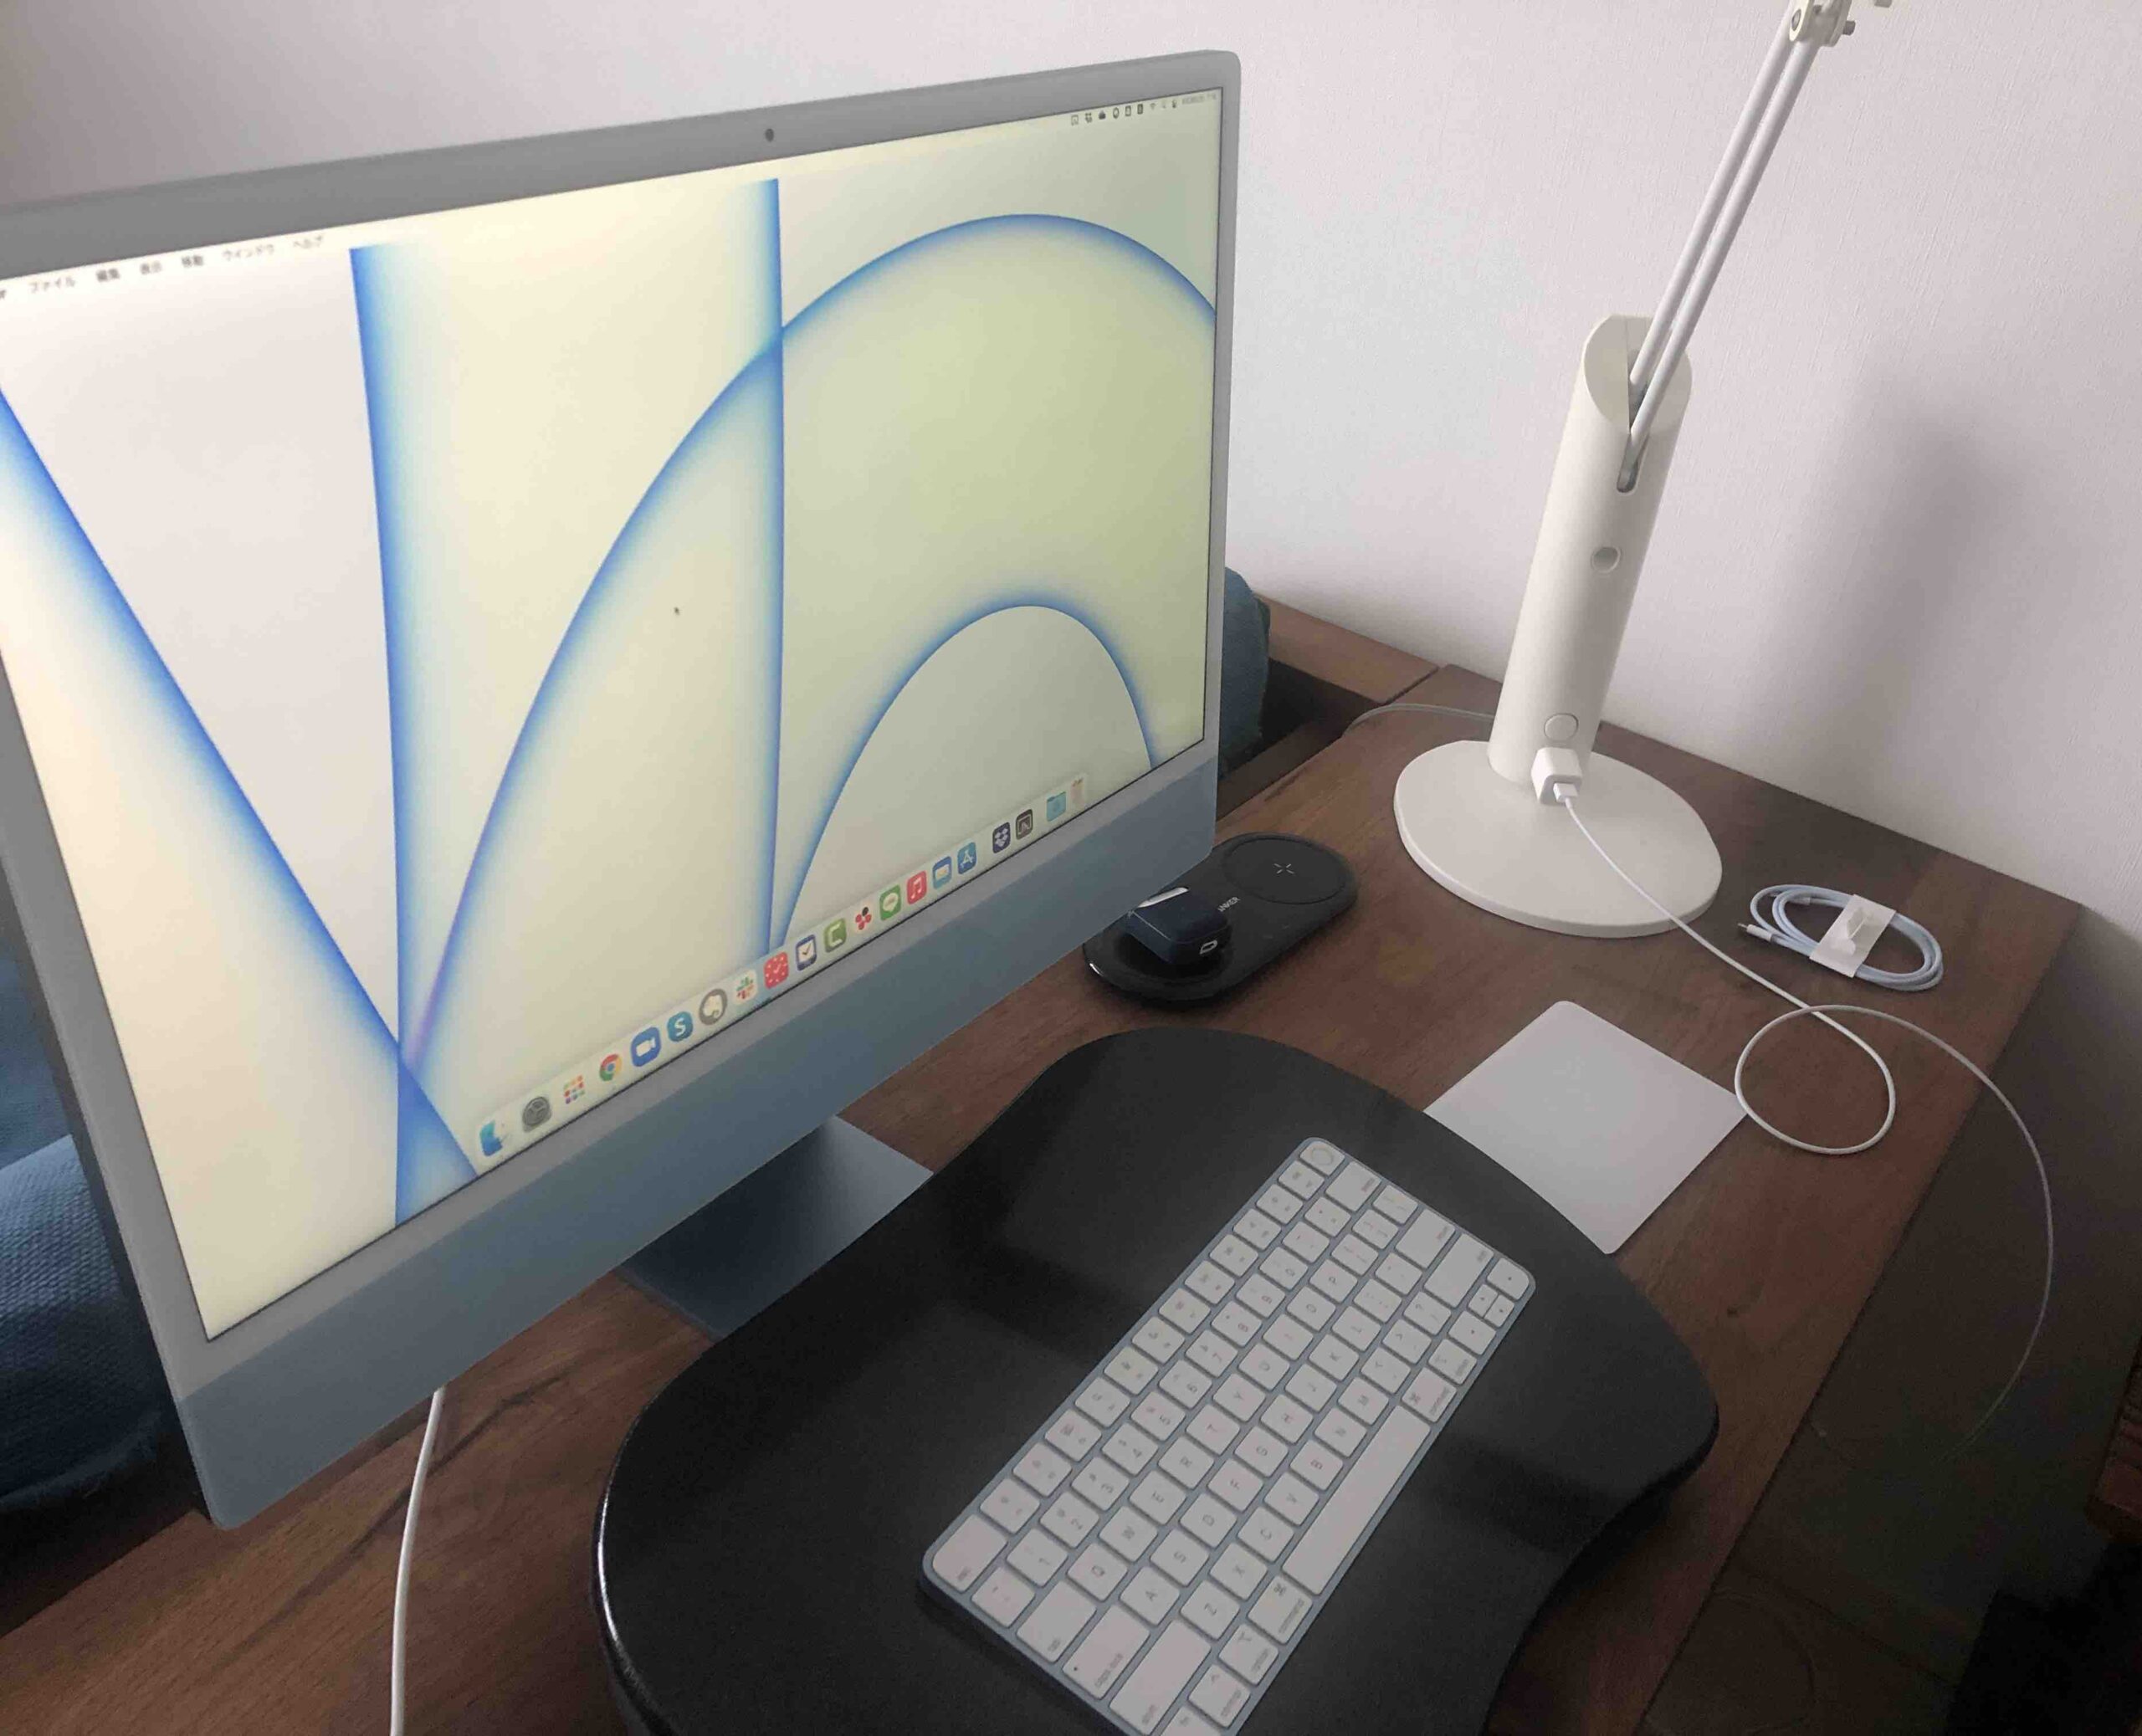 新型iMacのその後の使用感と箱の問題 | 福原将之の科学カフェ